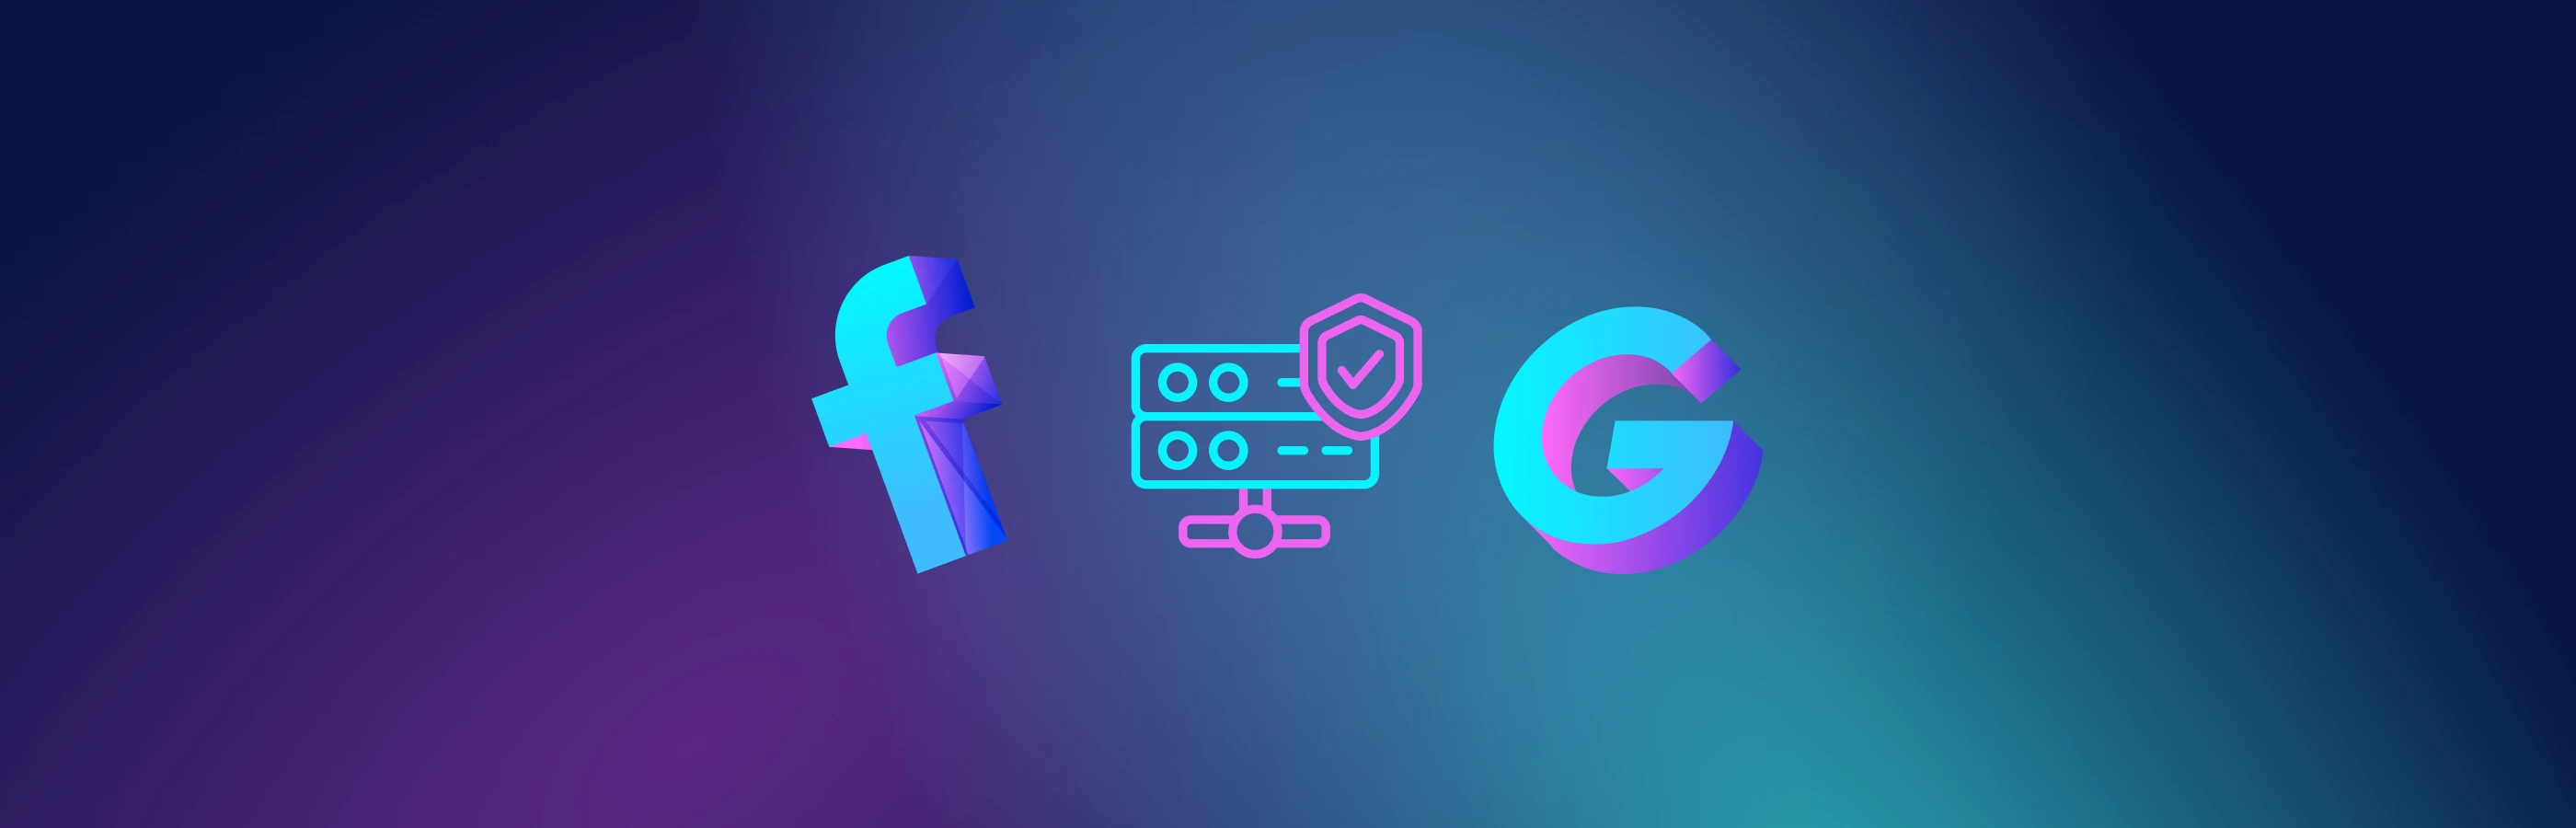 Cách chọn proxy tốt cho Facebook và Google: 6 mẹo